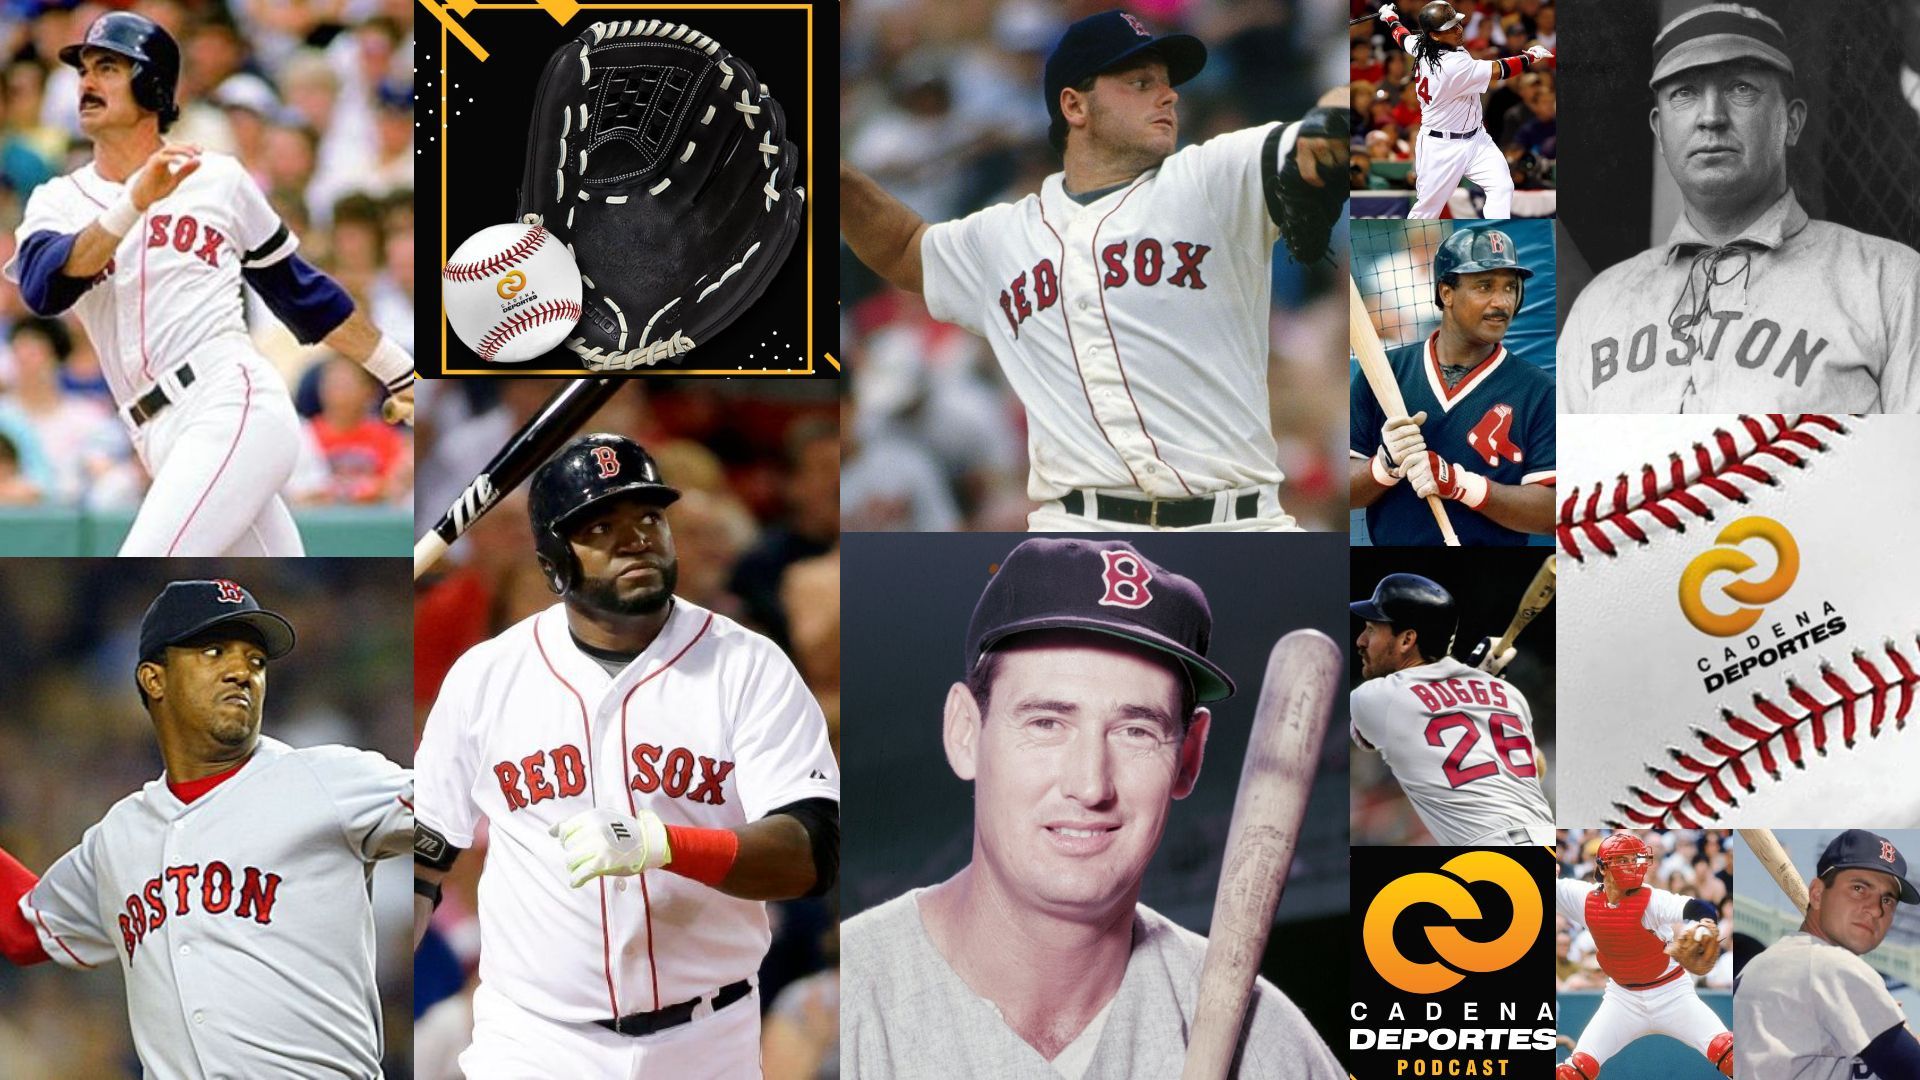 CADENA DEPORTES PODCAST Los Boston Red Sox y la historia de sus jugadores